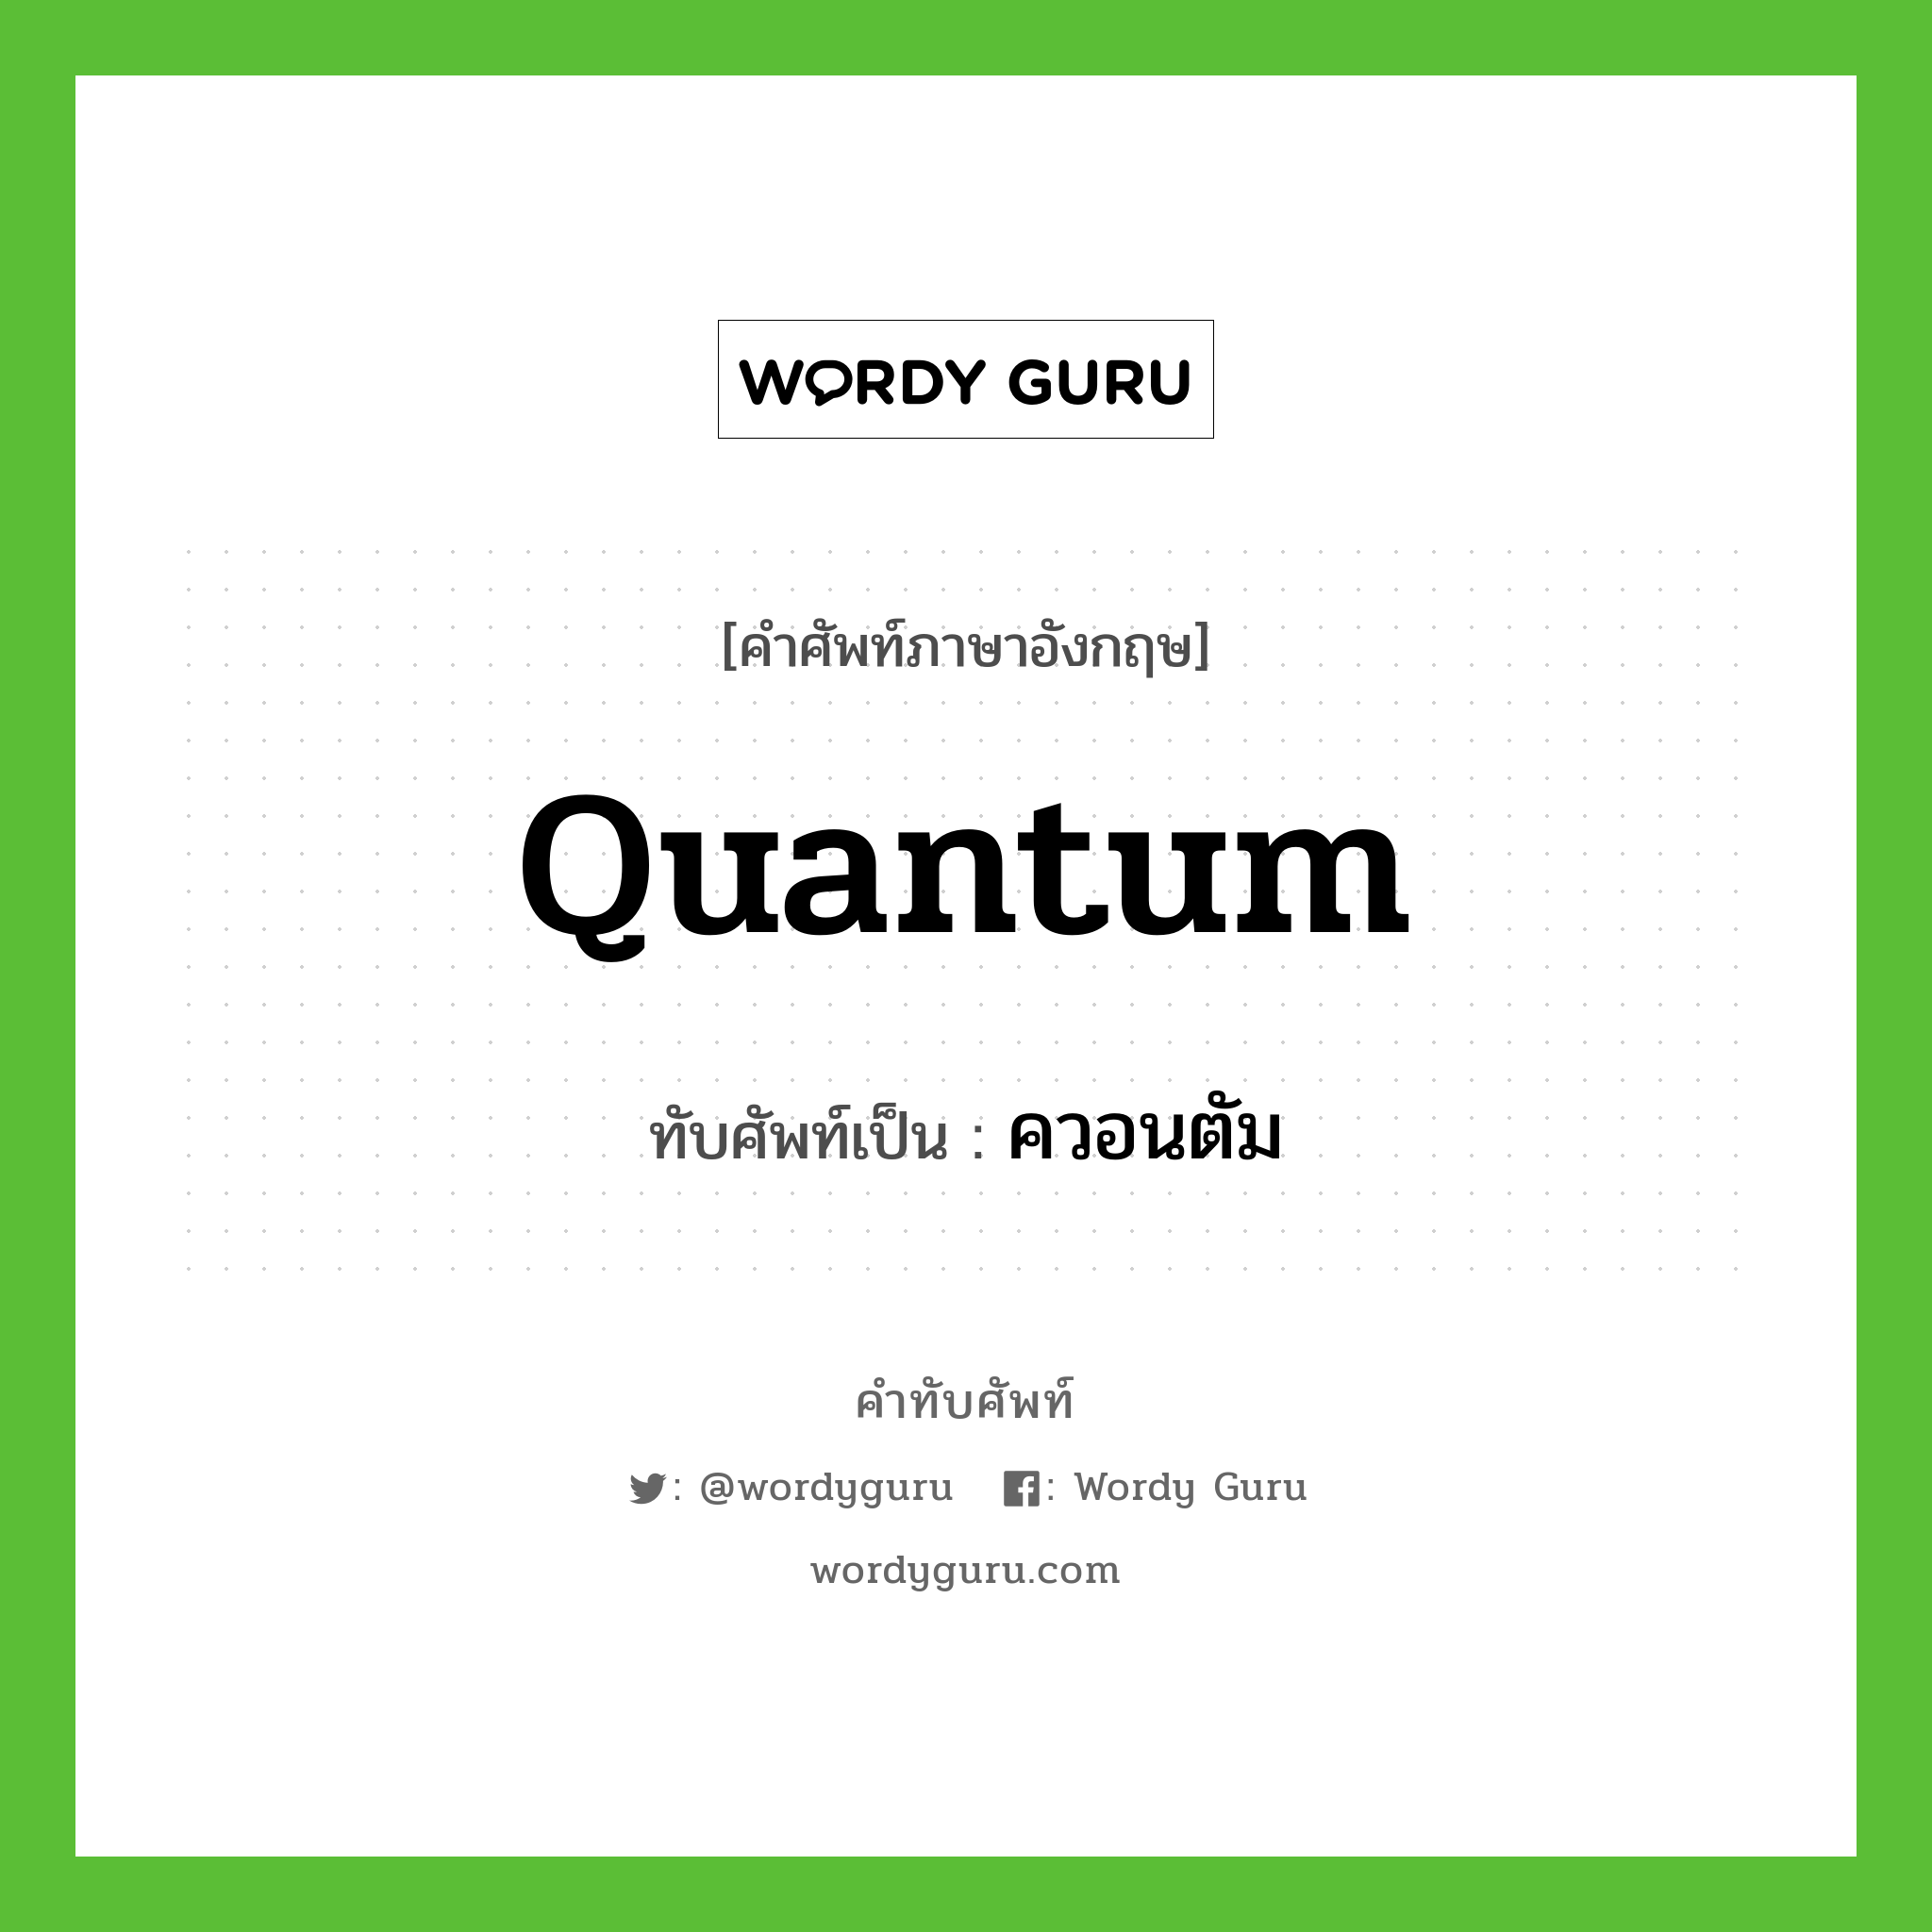 ควอนตัม เขียนอย่างไร?, คำศัพท์ภาษาอังกฤษ ควอนตัม ทับศัพท์เป็น quantum